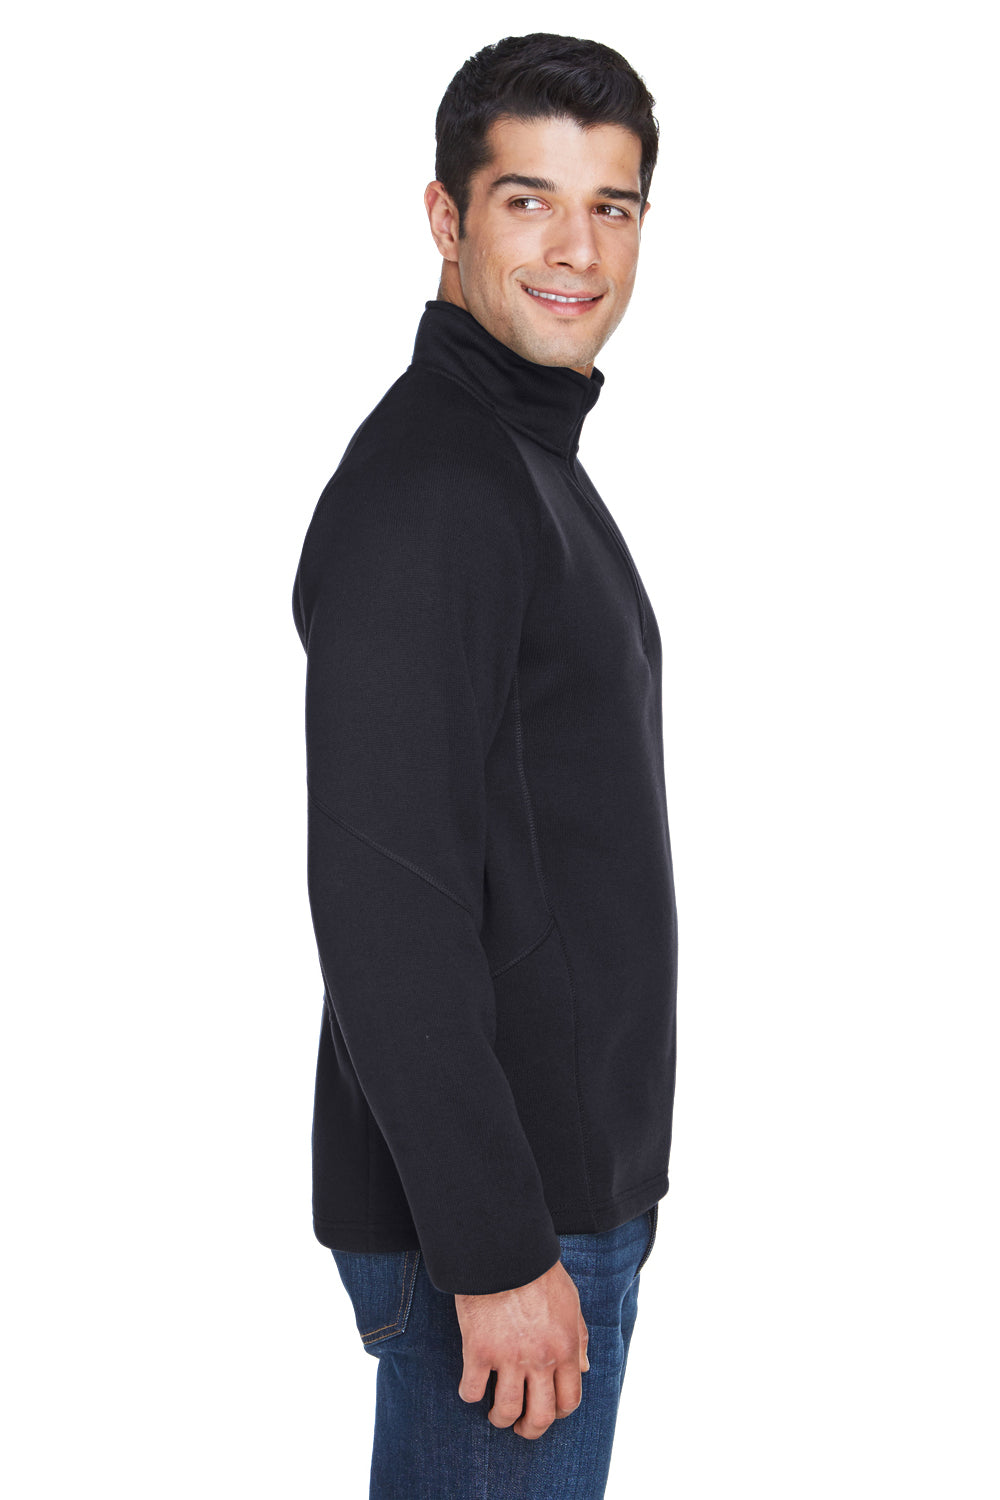 Devon & Jones DG792 Mens Bristol Sweater Fleece 1/4 Zip Sweatshirt Black Side